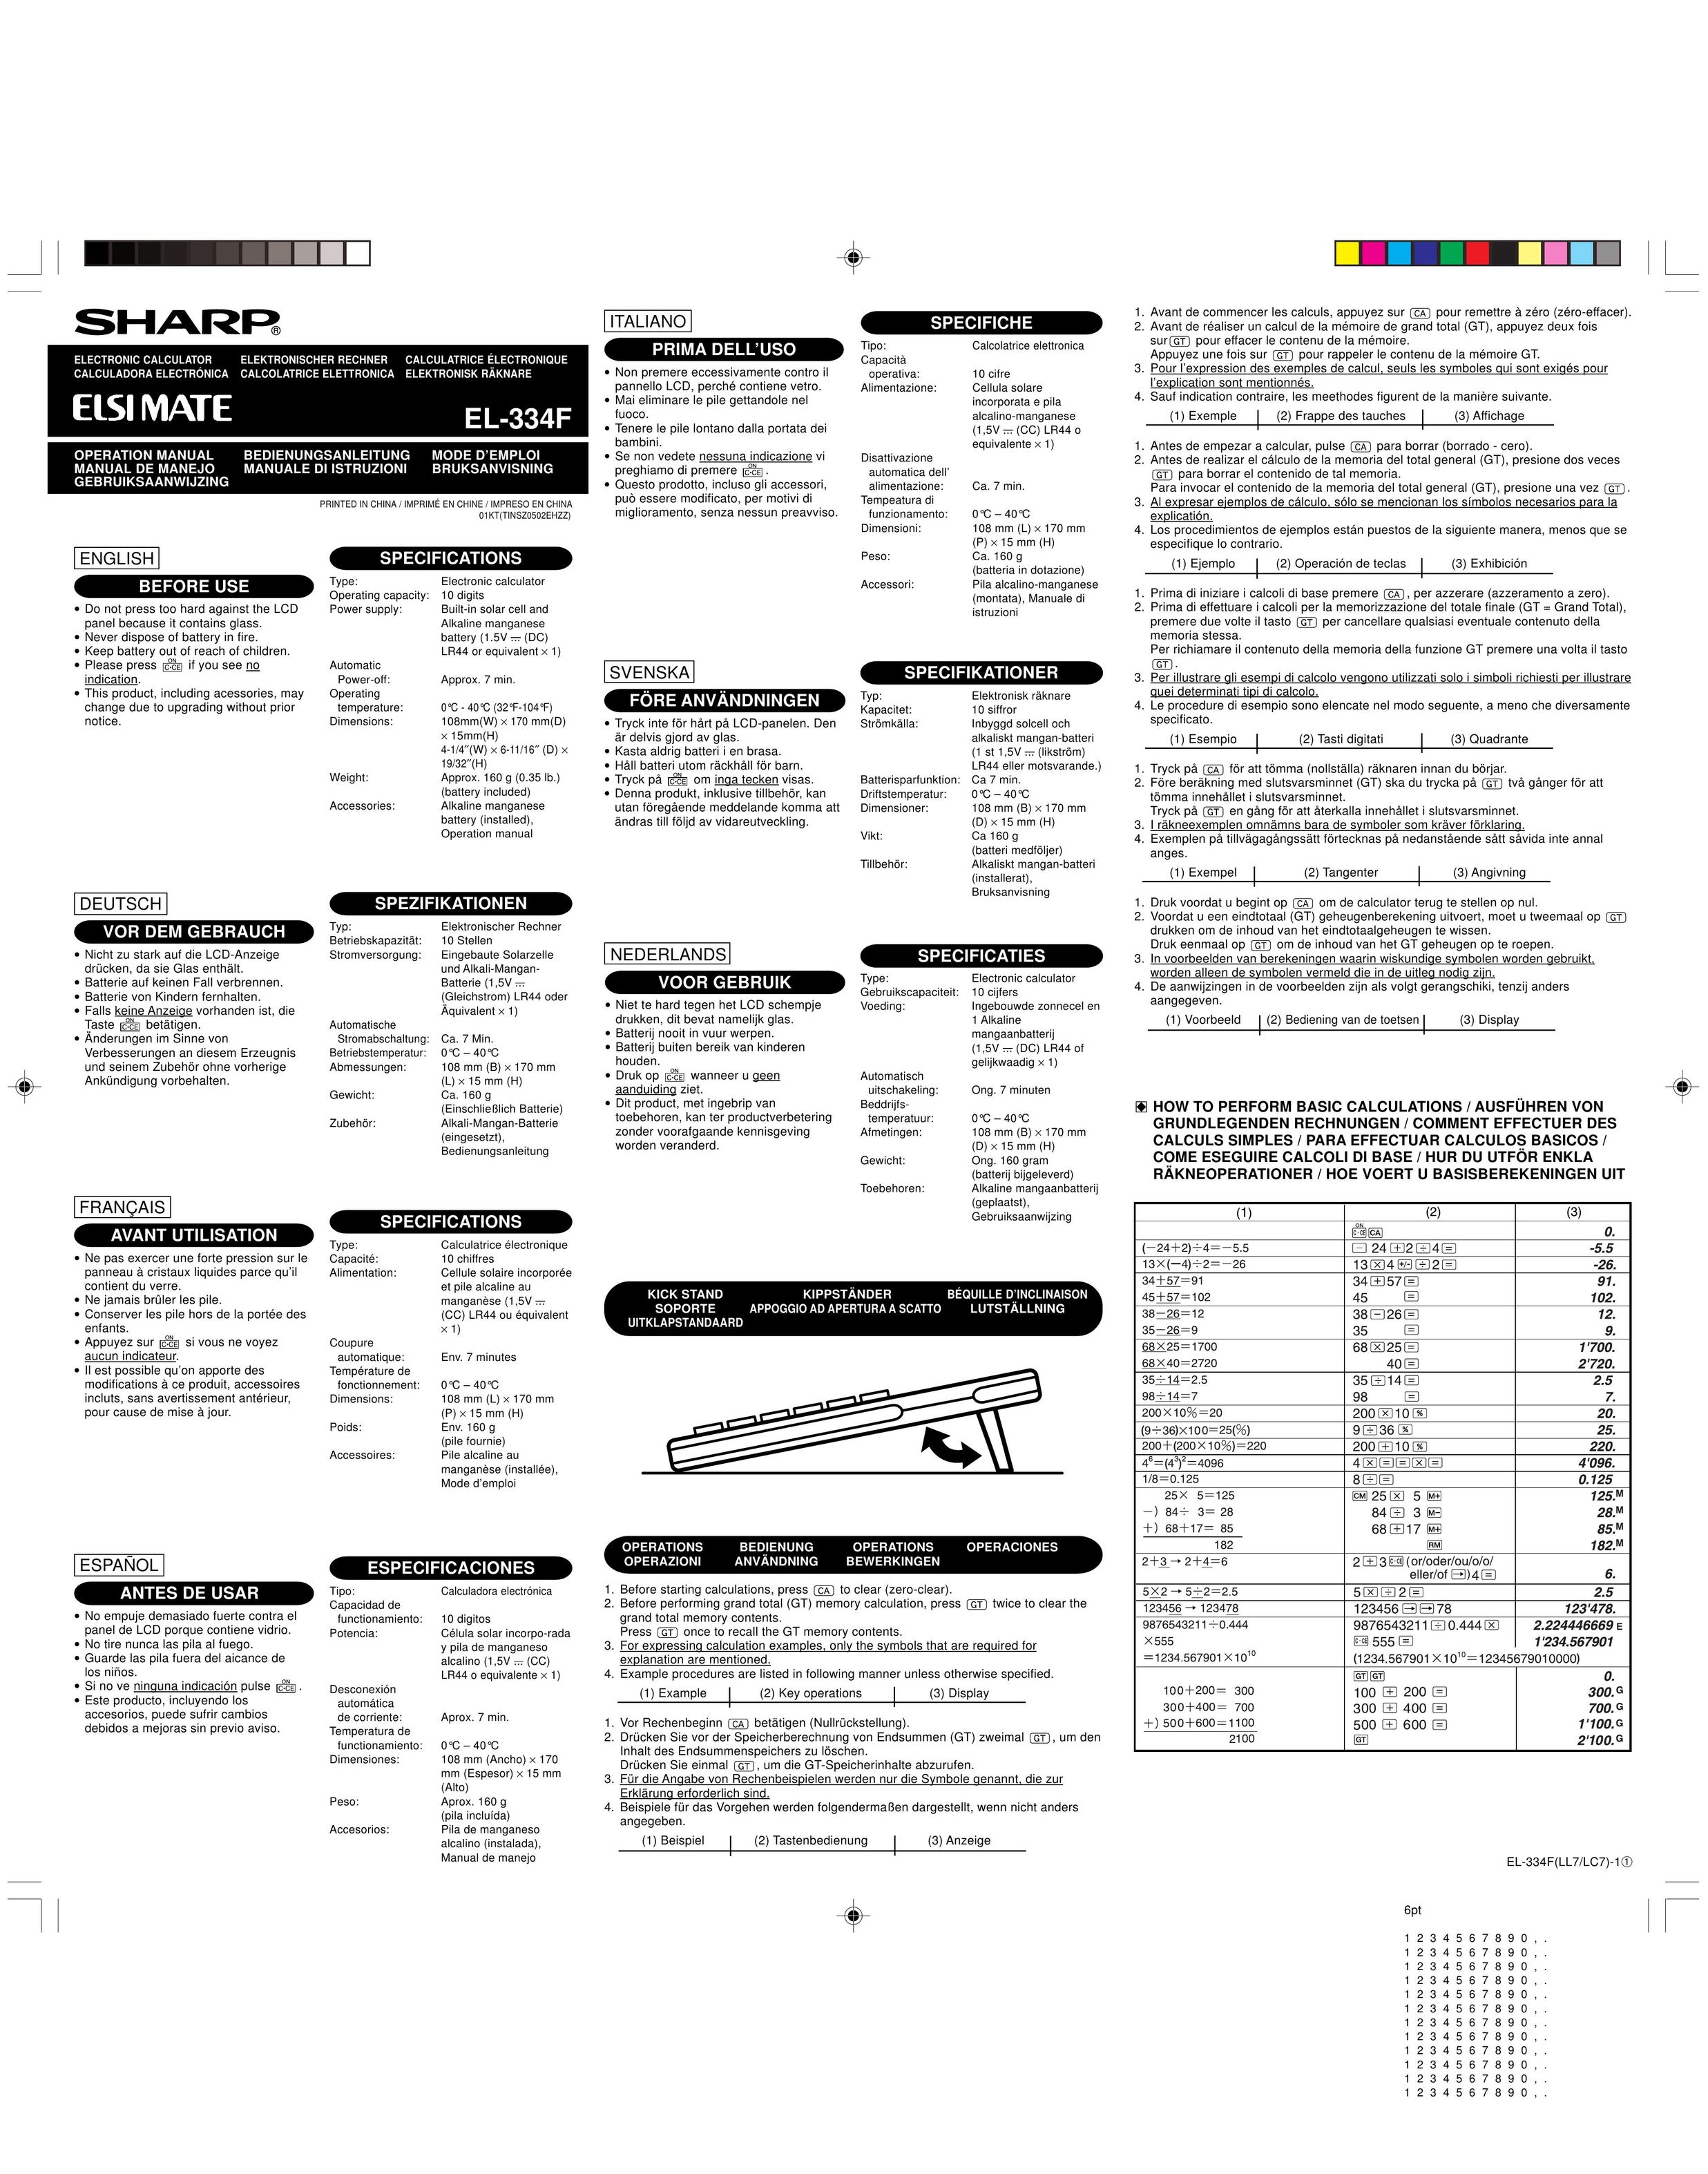 Sharp EL-334F Calculator User Manual